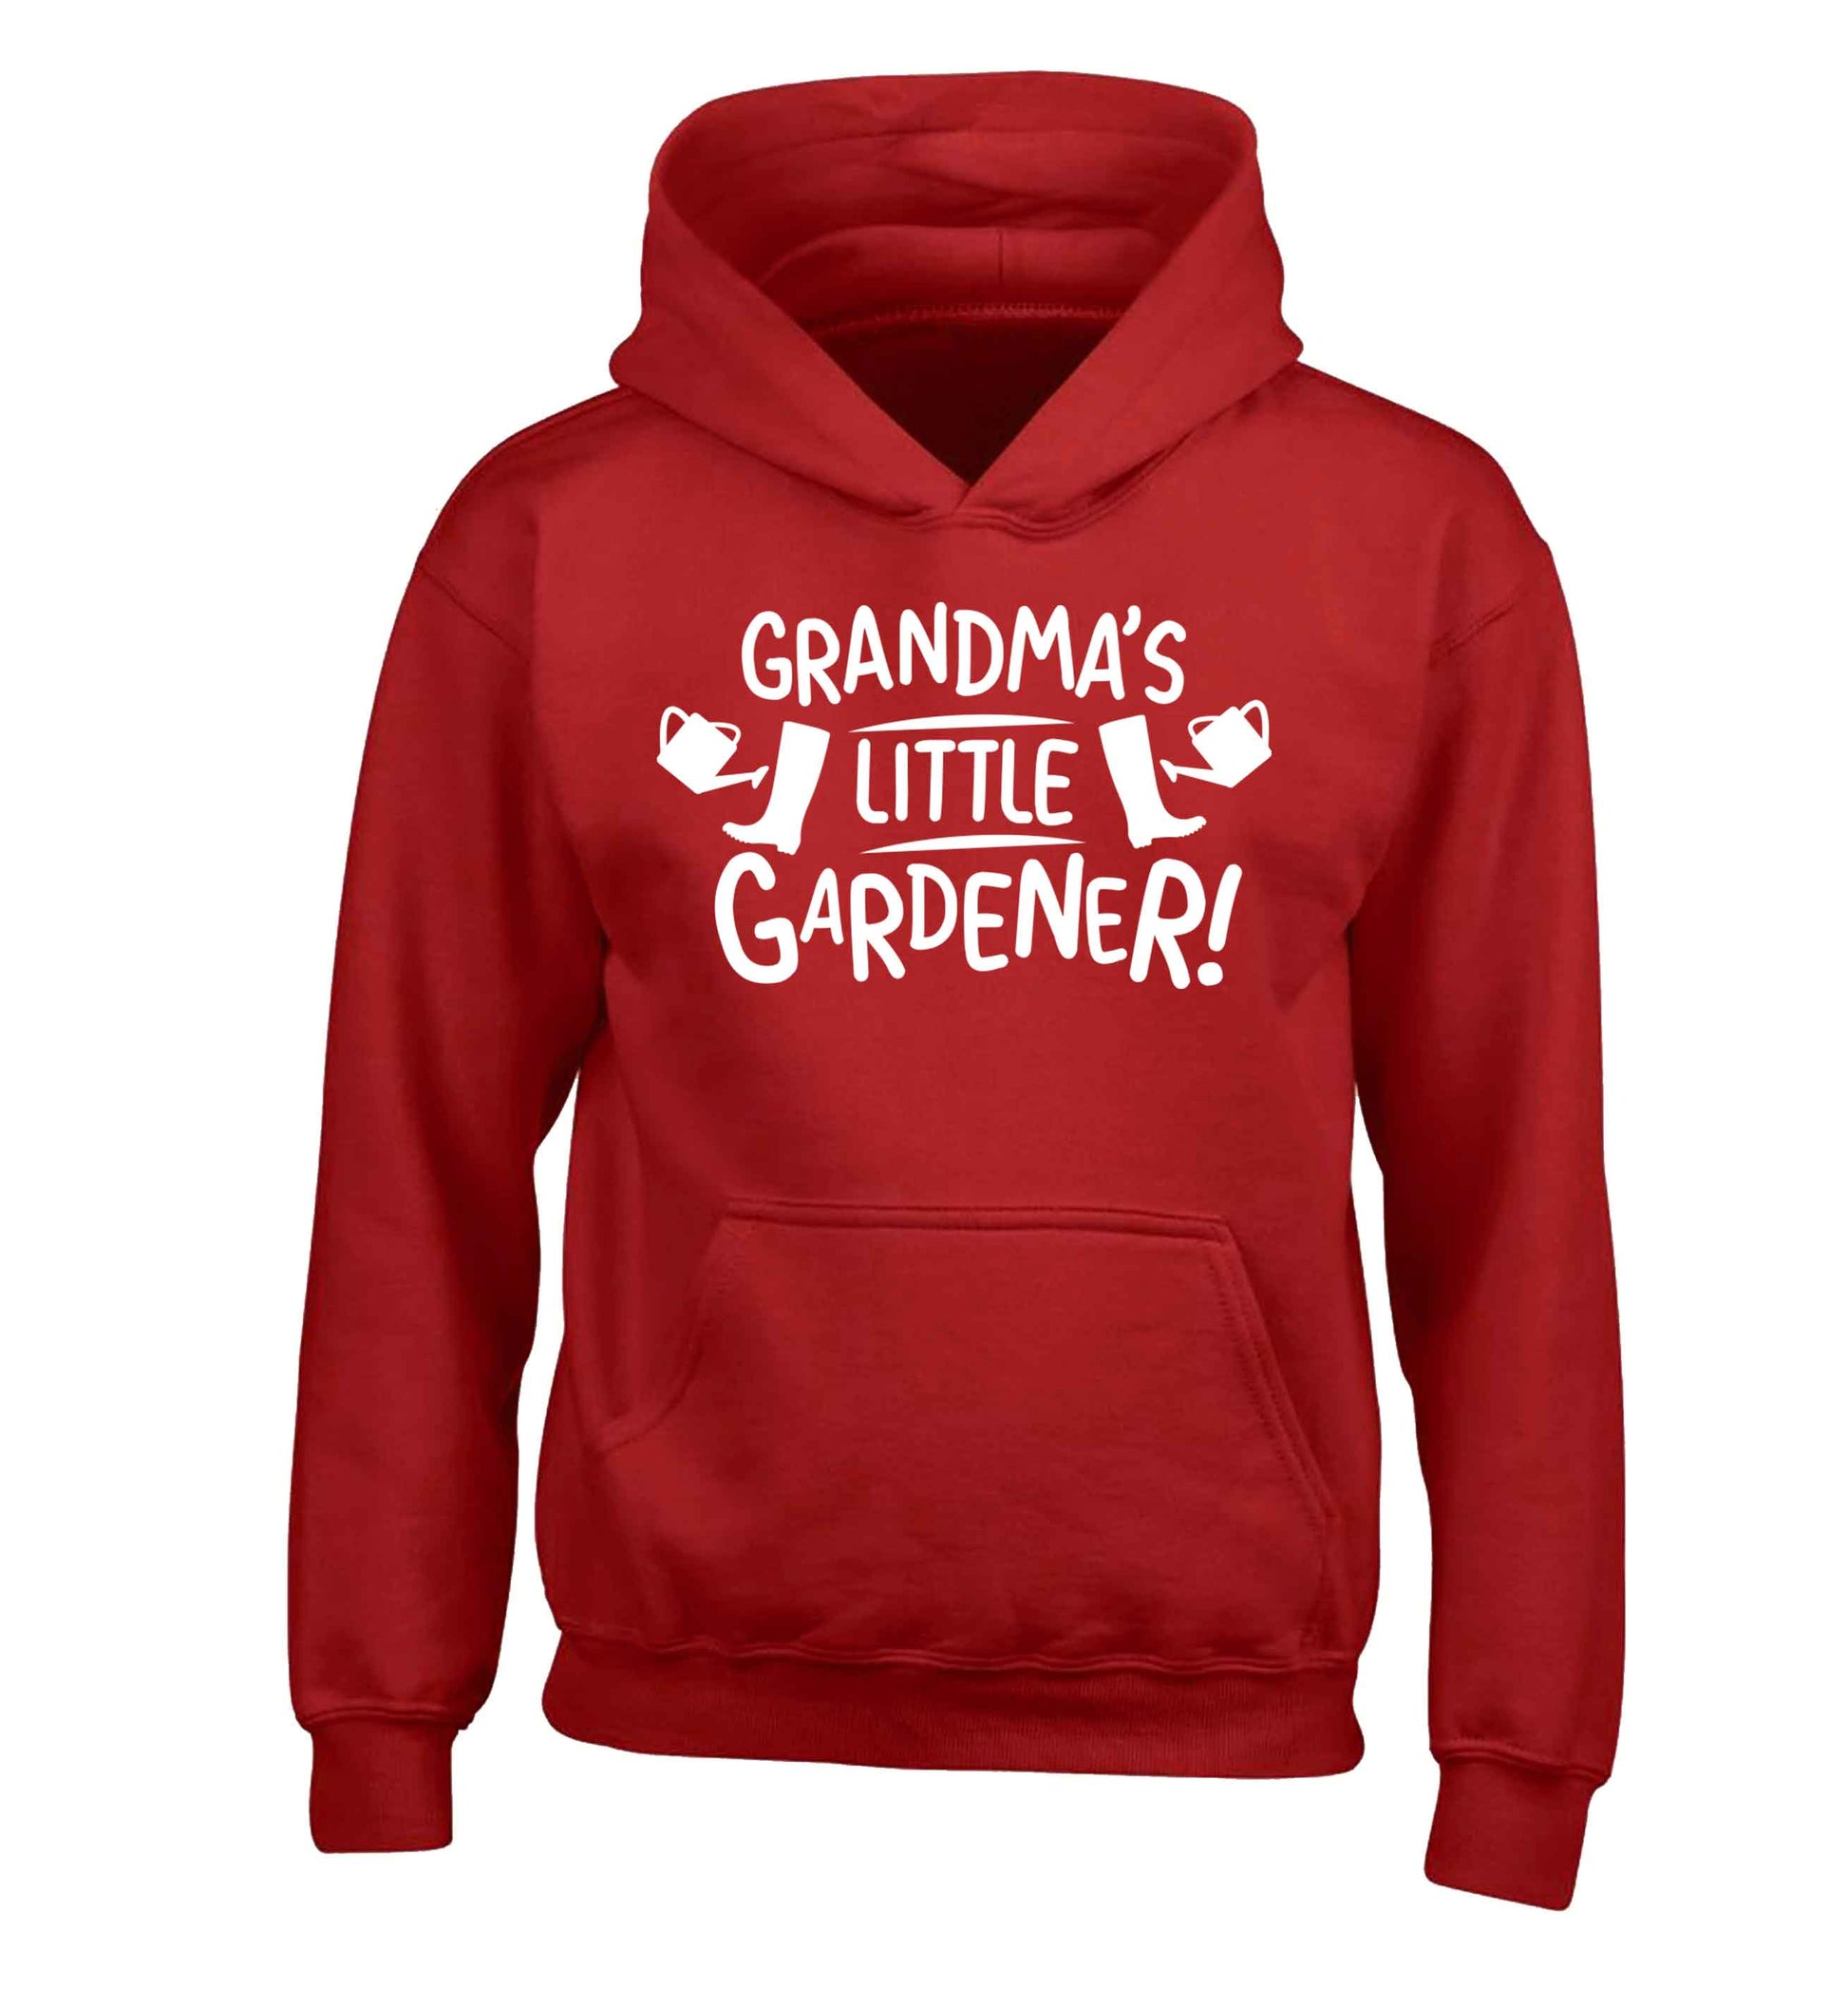 Grandma's little gardener children's red hoodie 12-13 Years